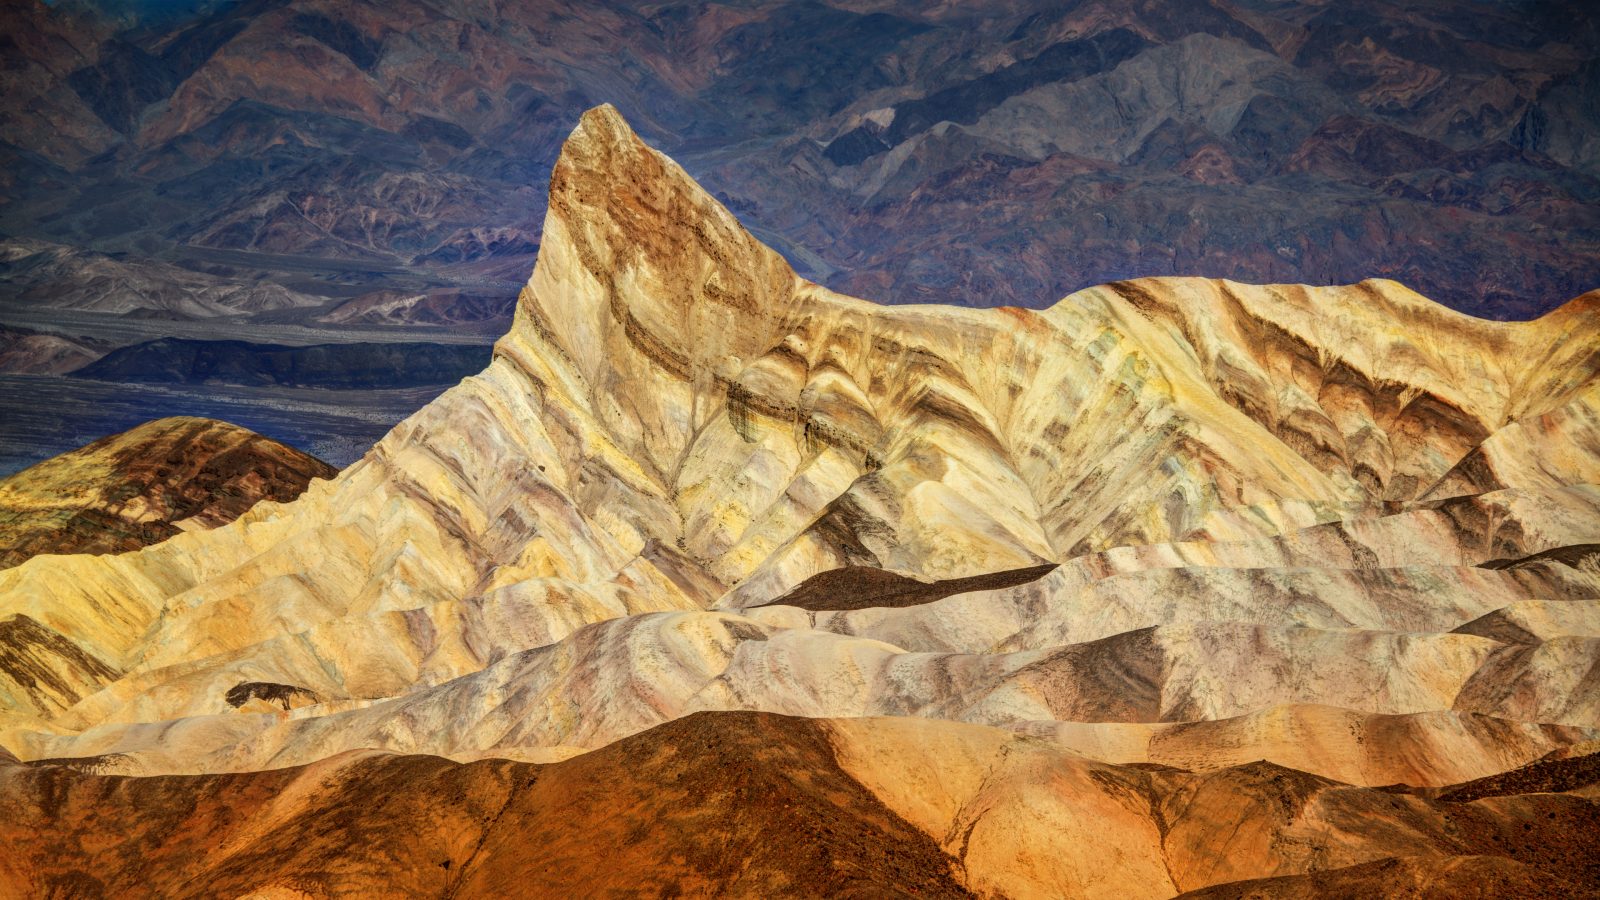 3840×2160 美国死亡谷(U.S Death Valley)是莫哈韦沙漠与科罗拉多沙漠生物圈保护区